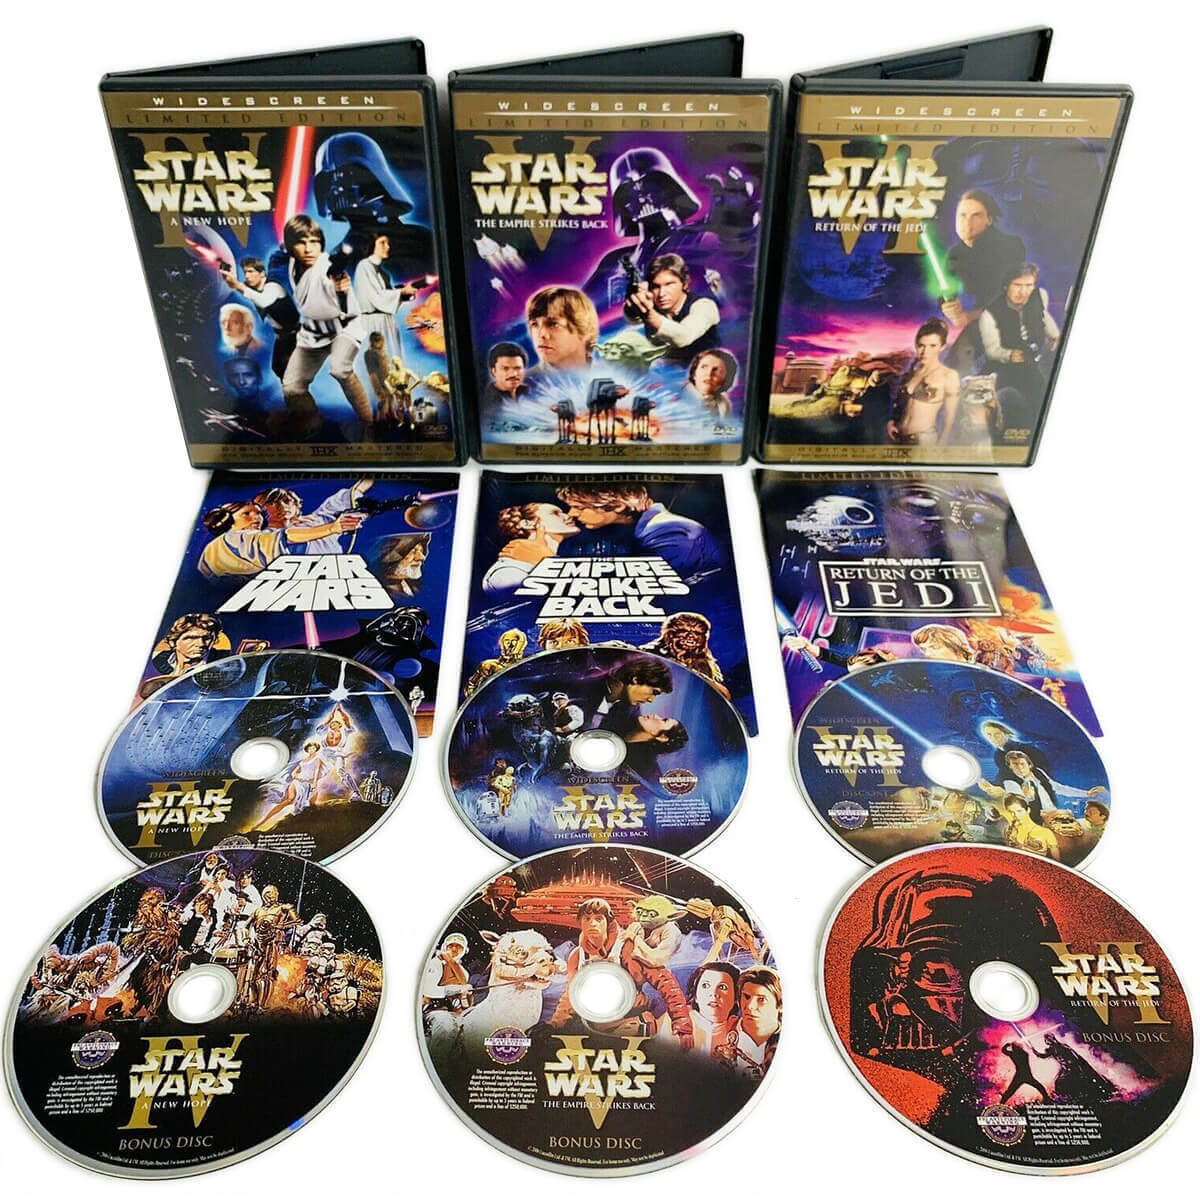 Star Wars Limited Edition DVDs orginal trilogy